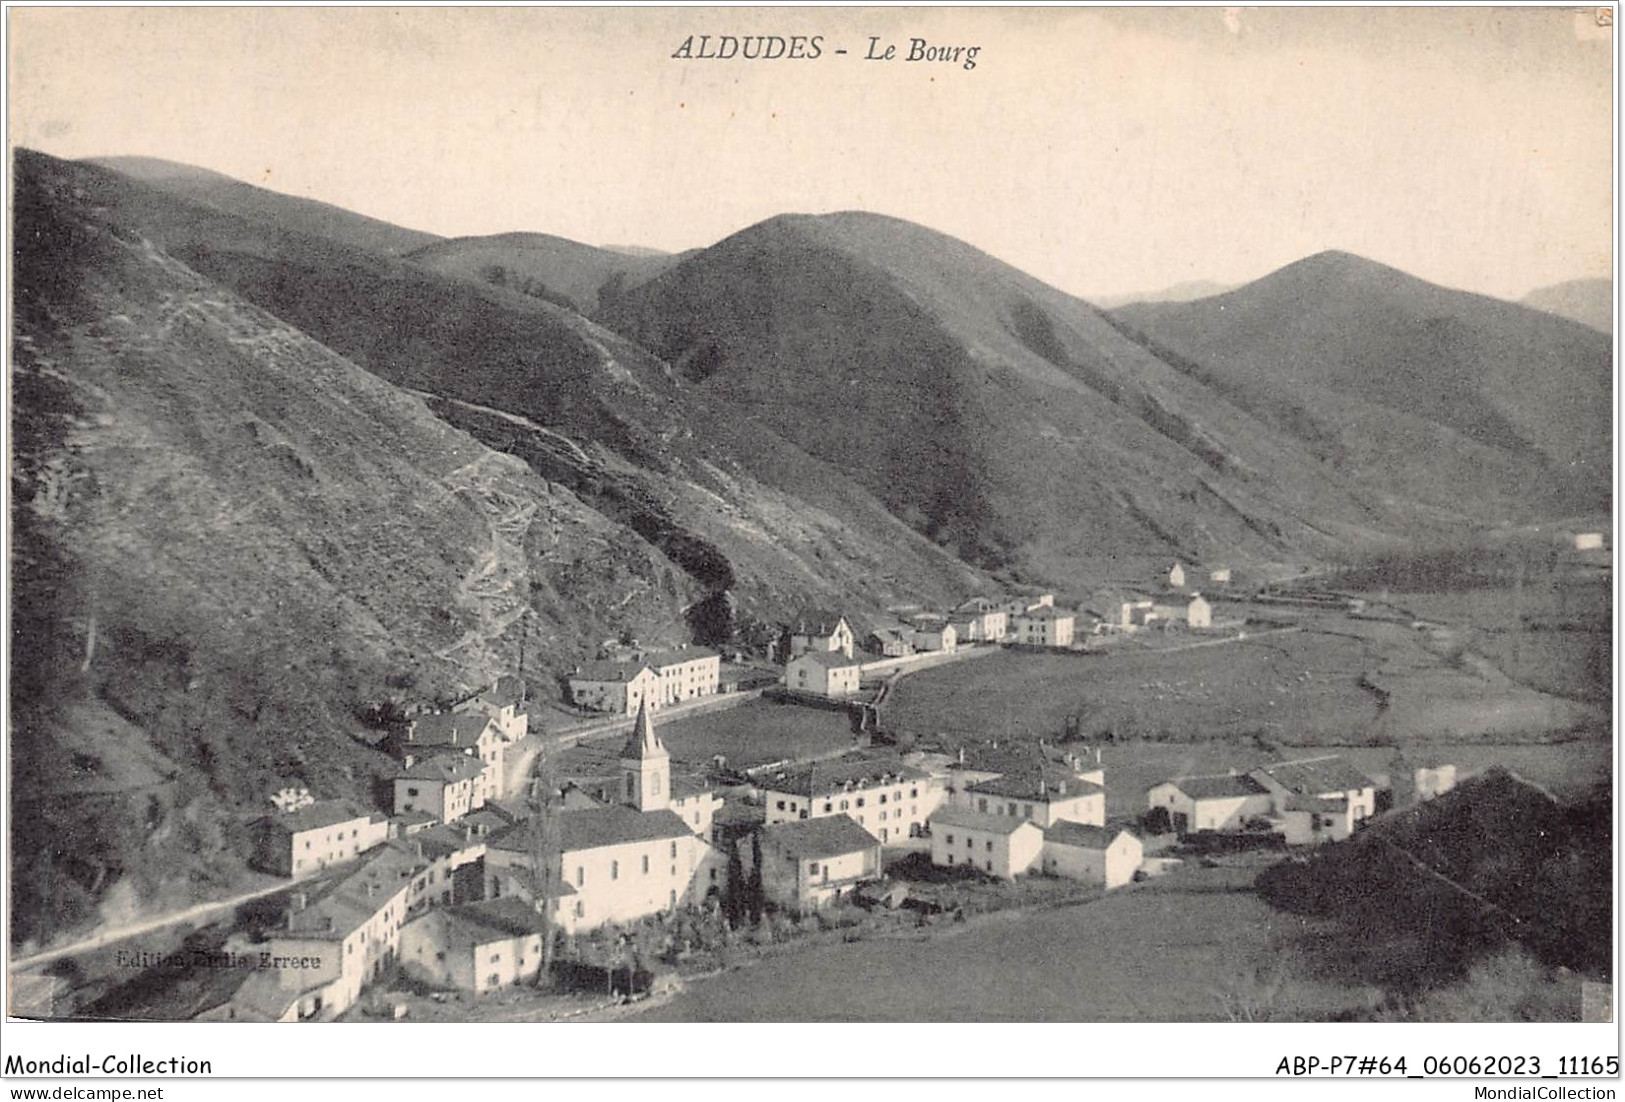 ABPP7-64-0565 - ALDUDES - Le Bourg - Aldudes